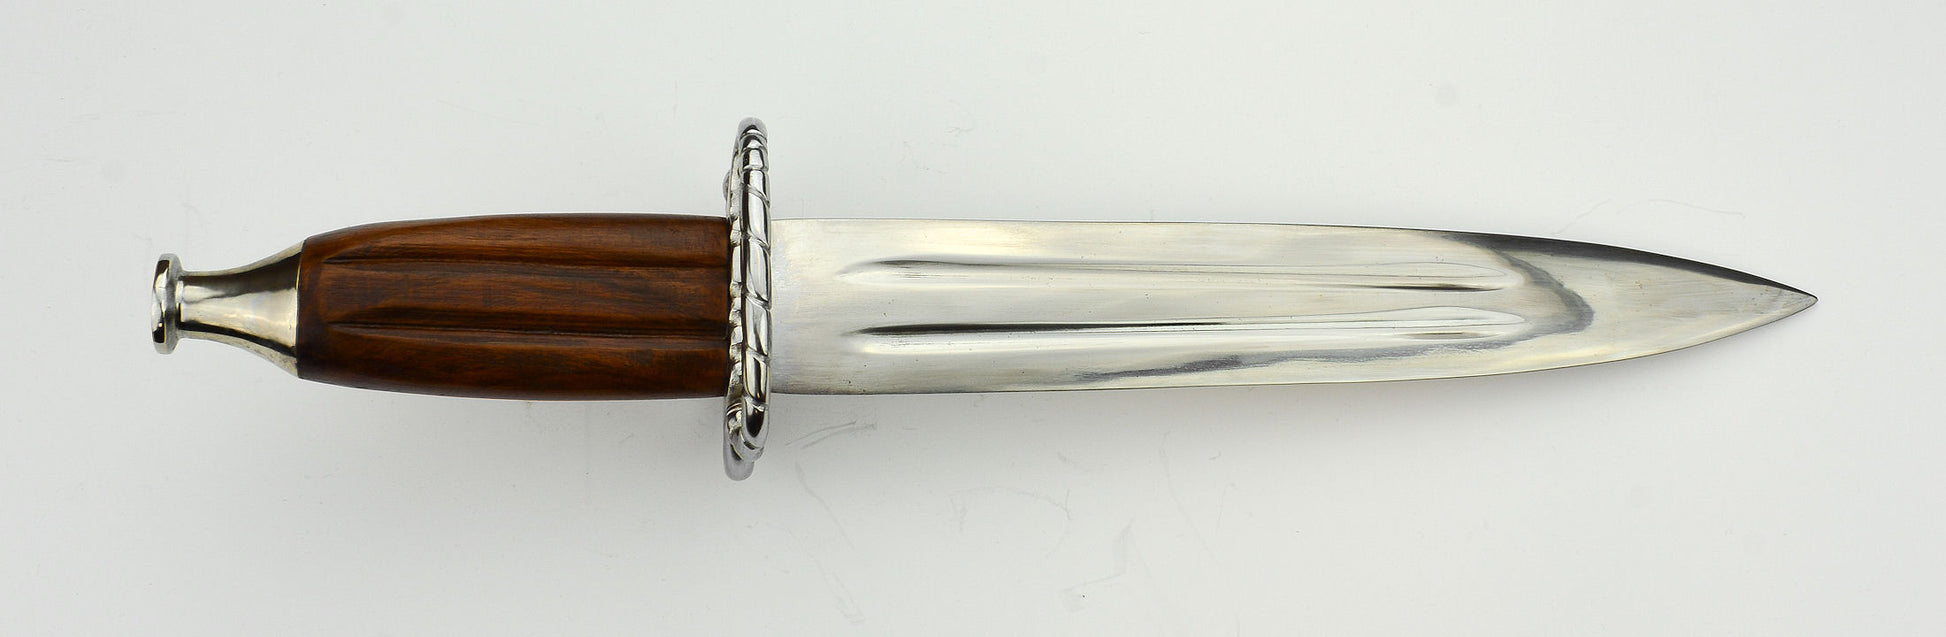 German Lansknecht Katzbalger Dagger